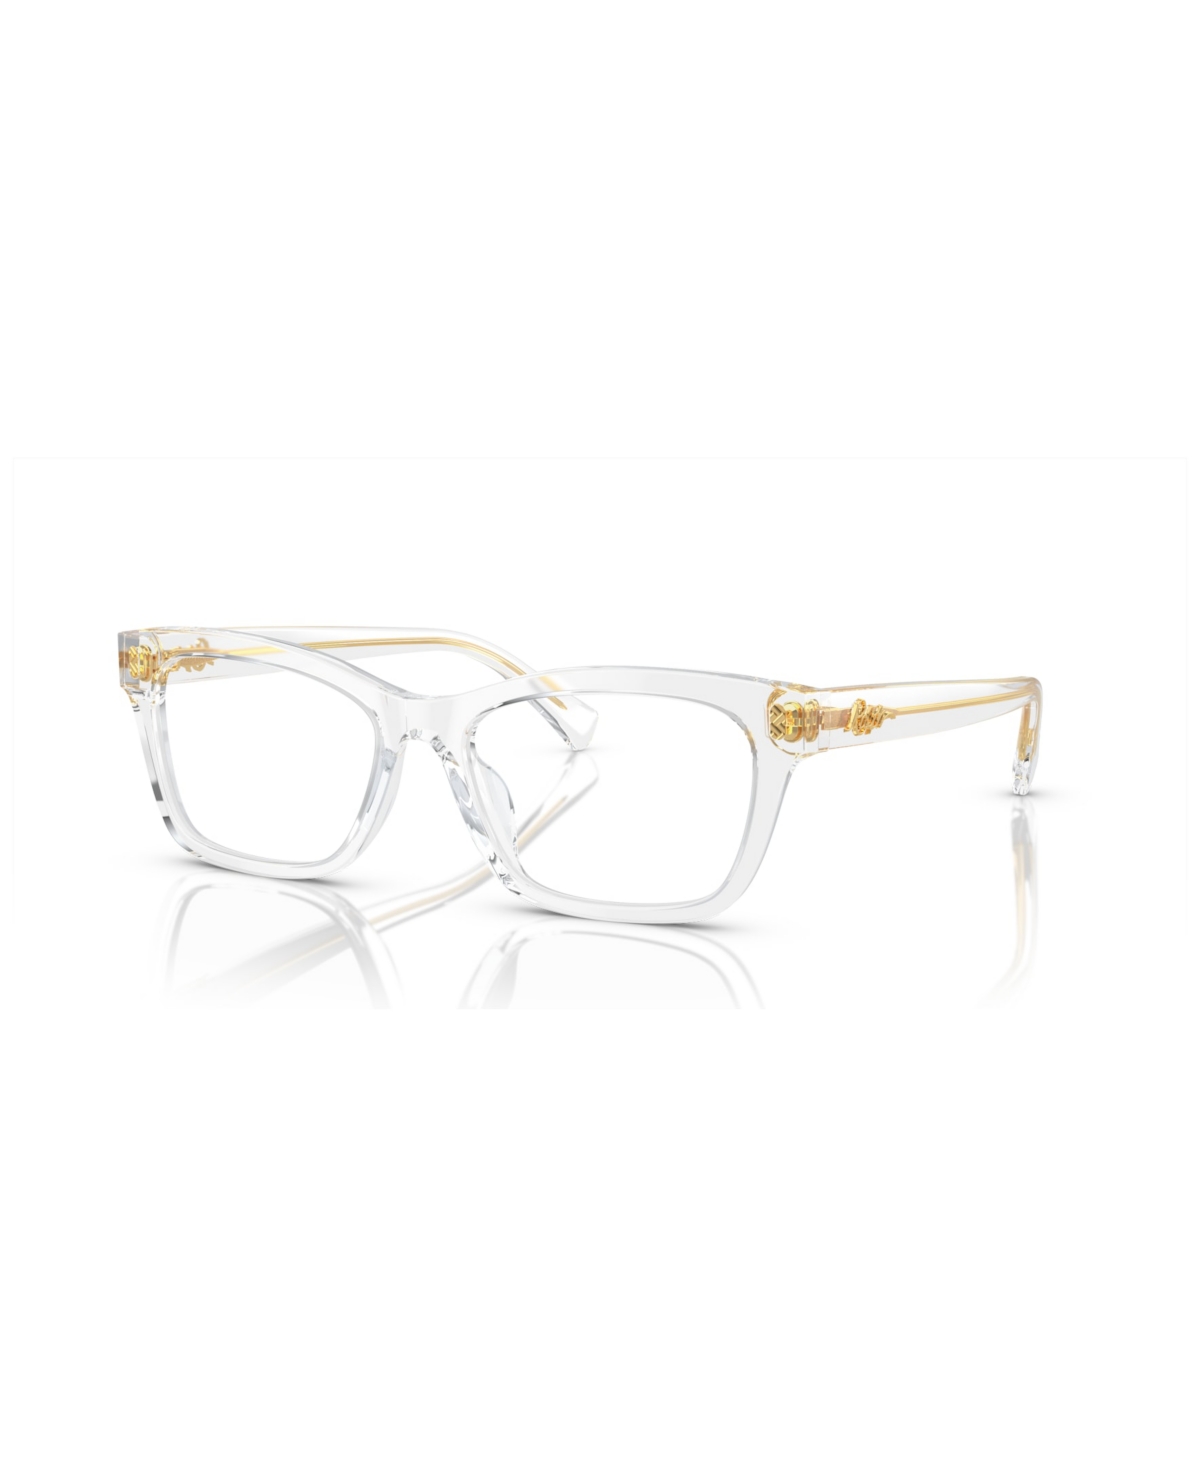 Women's Eyeglasses, RA7154U - Shiny Dark Havana